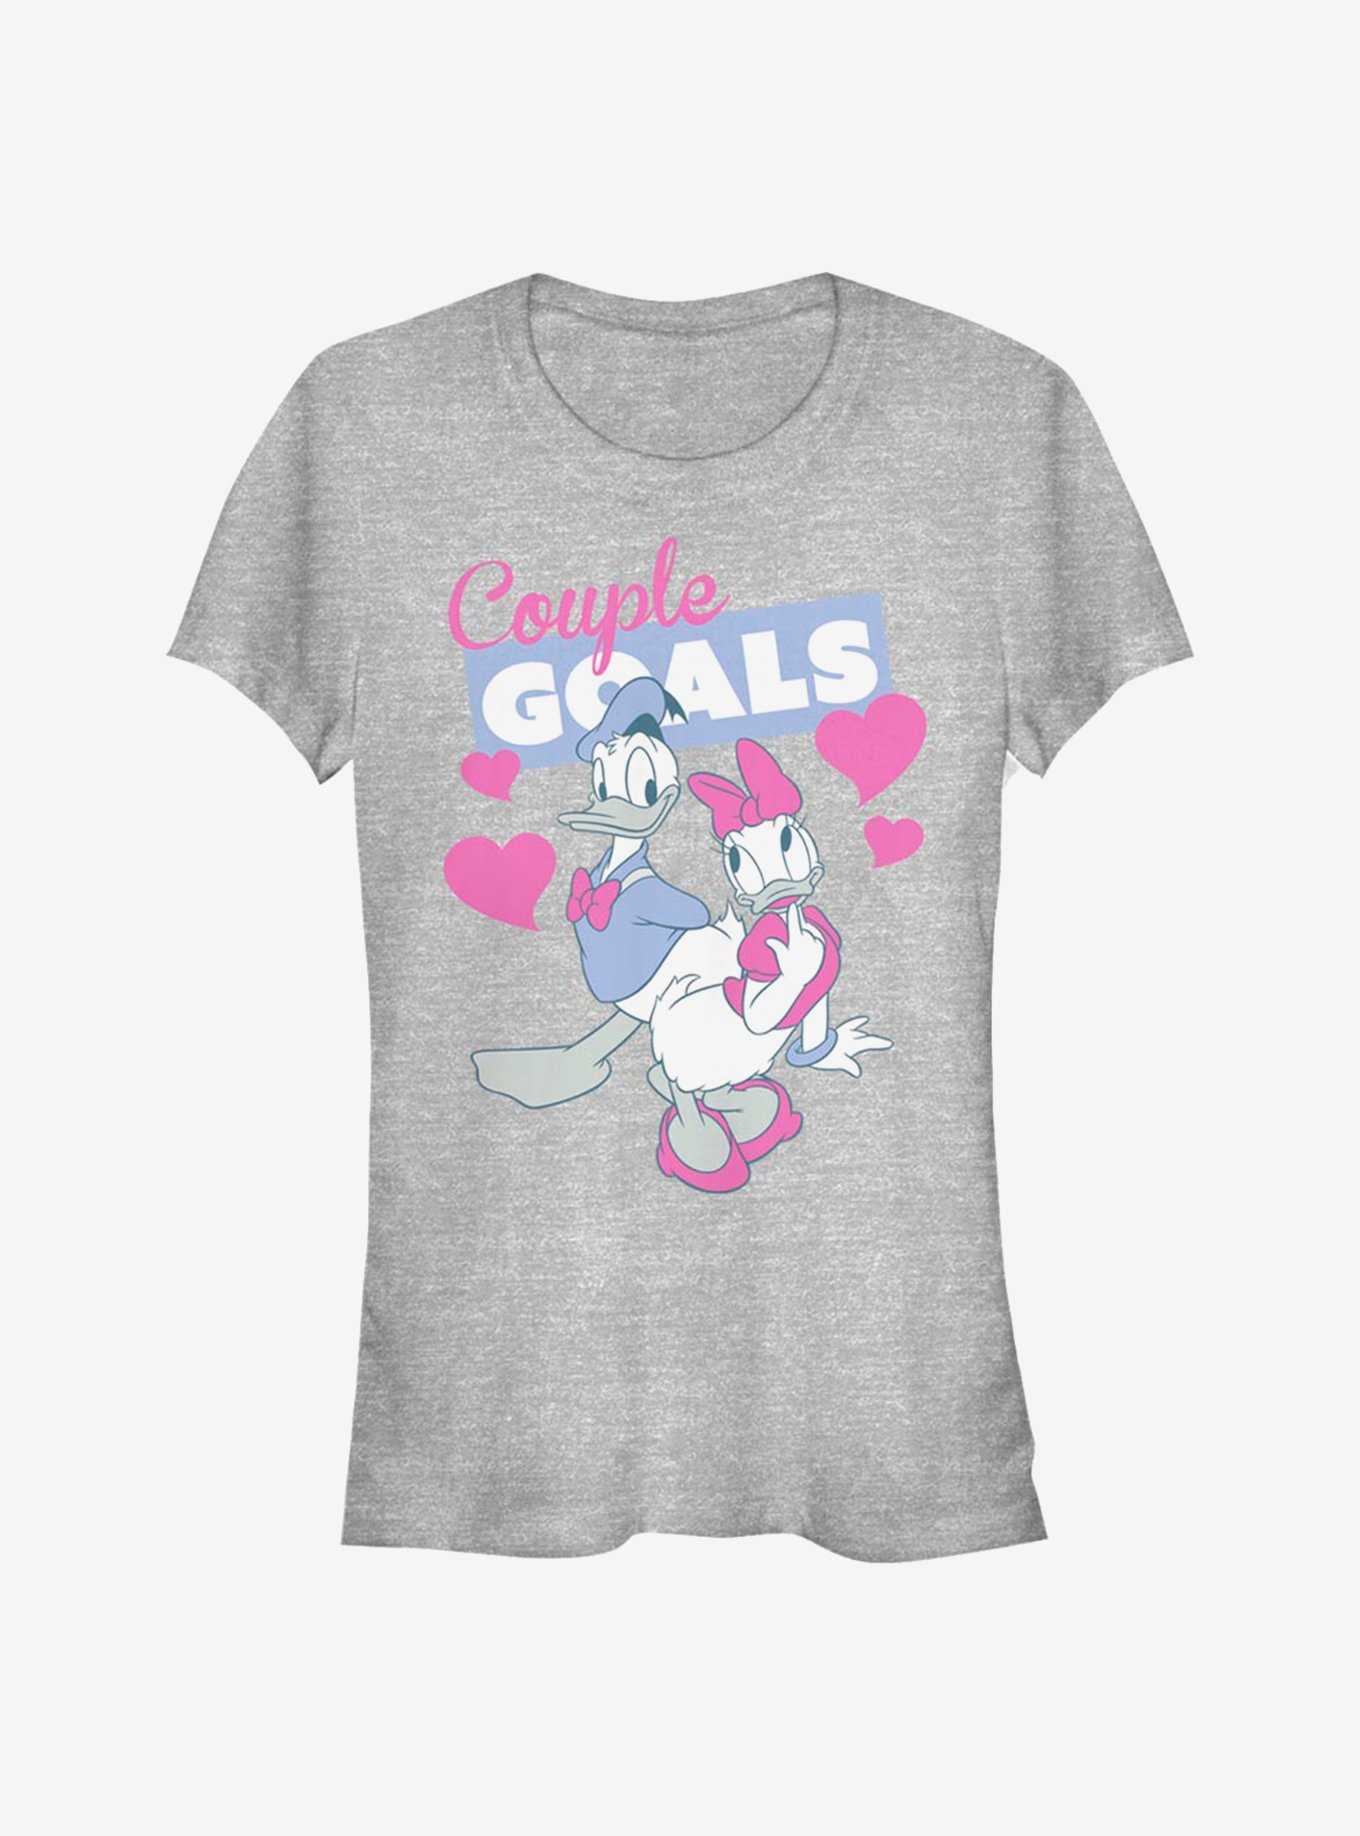 Disney Donald Duck & Daisy Duck Couple Goals Girls T-Shirt, , hi-res